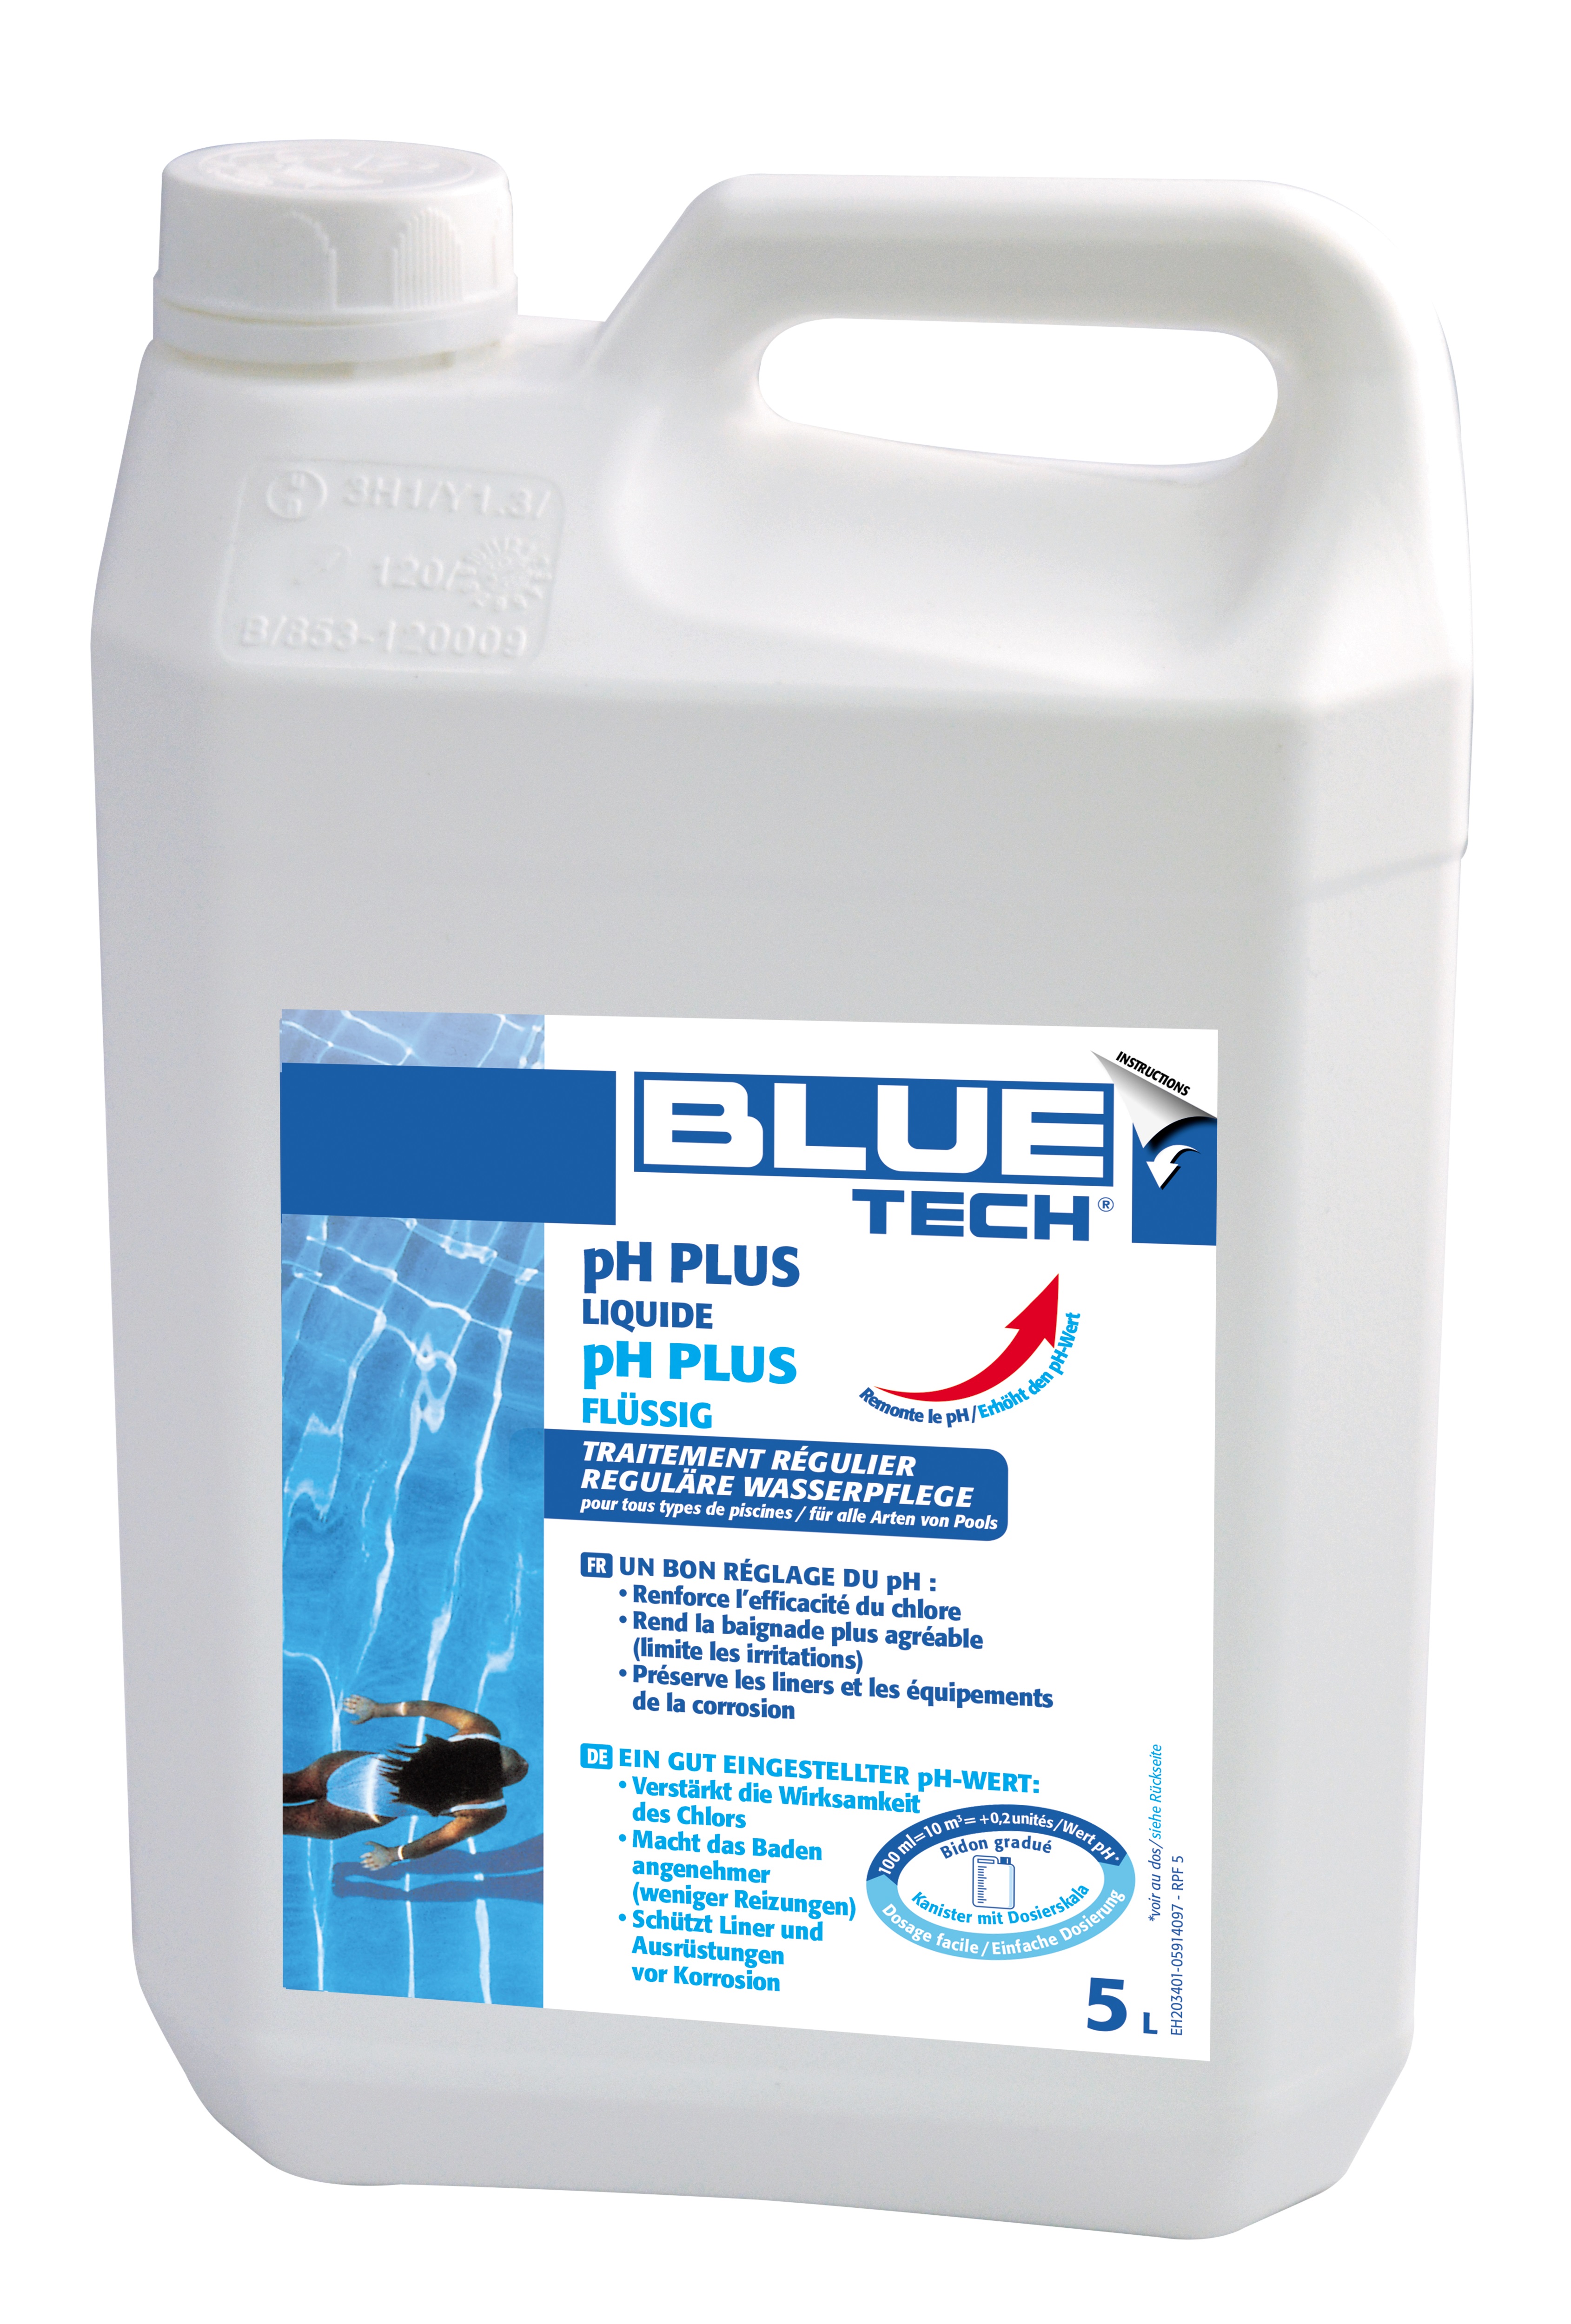 Ph plus liquide - 30% 5l/6,65kg